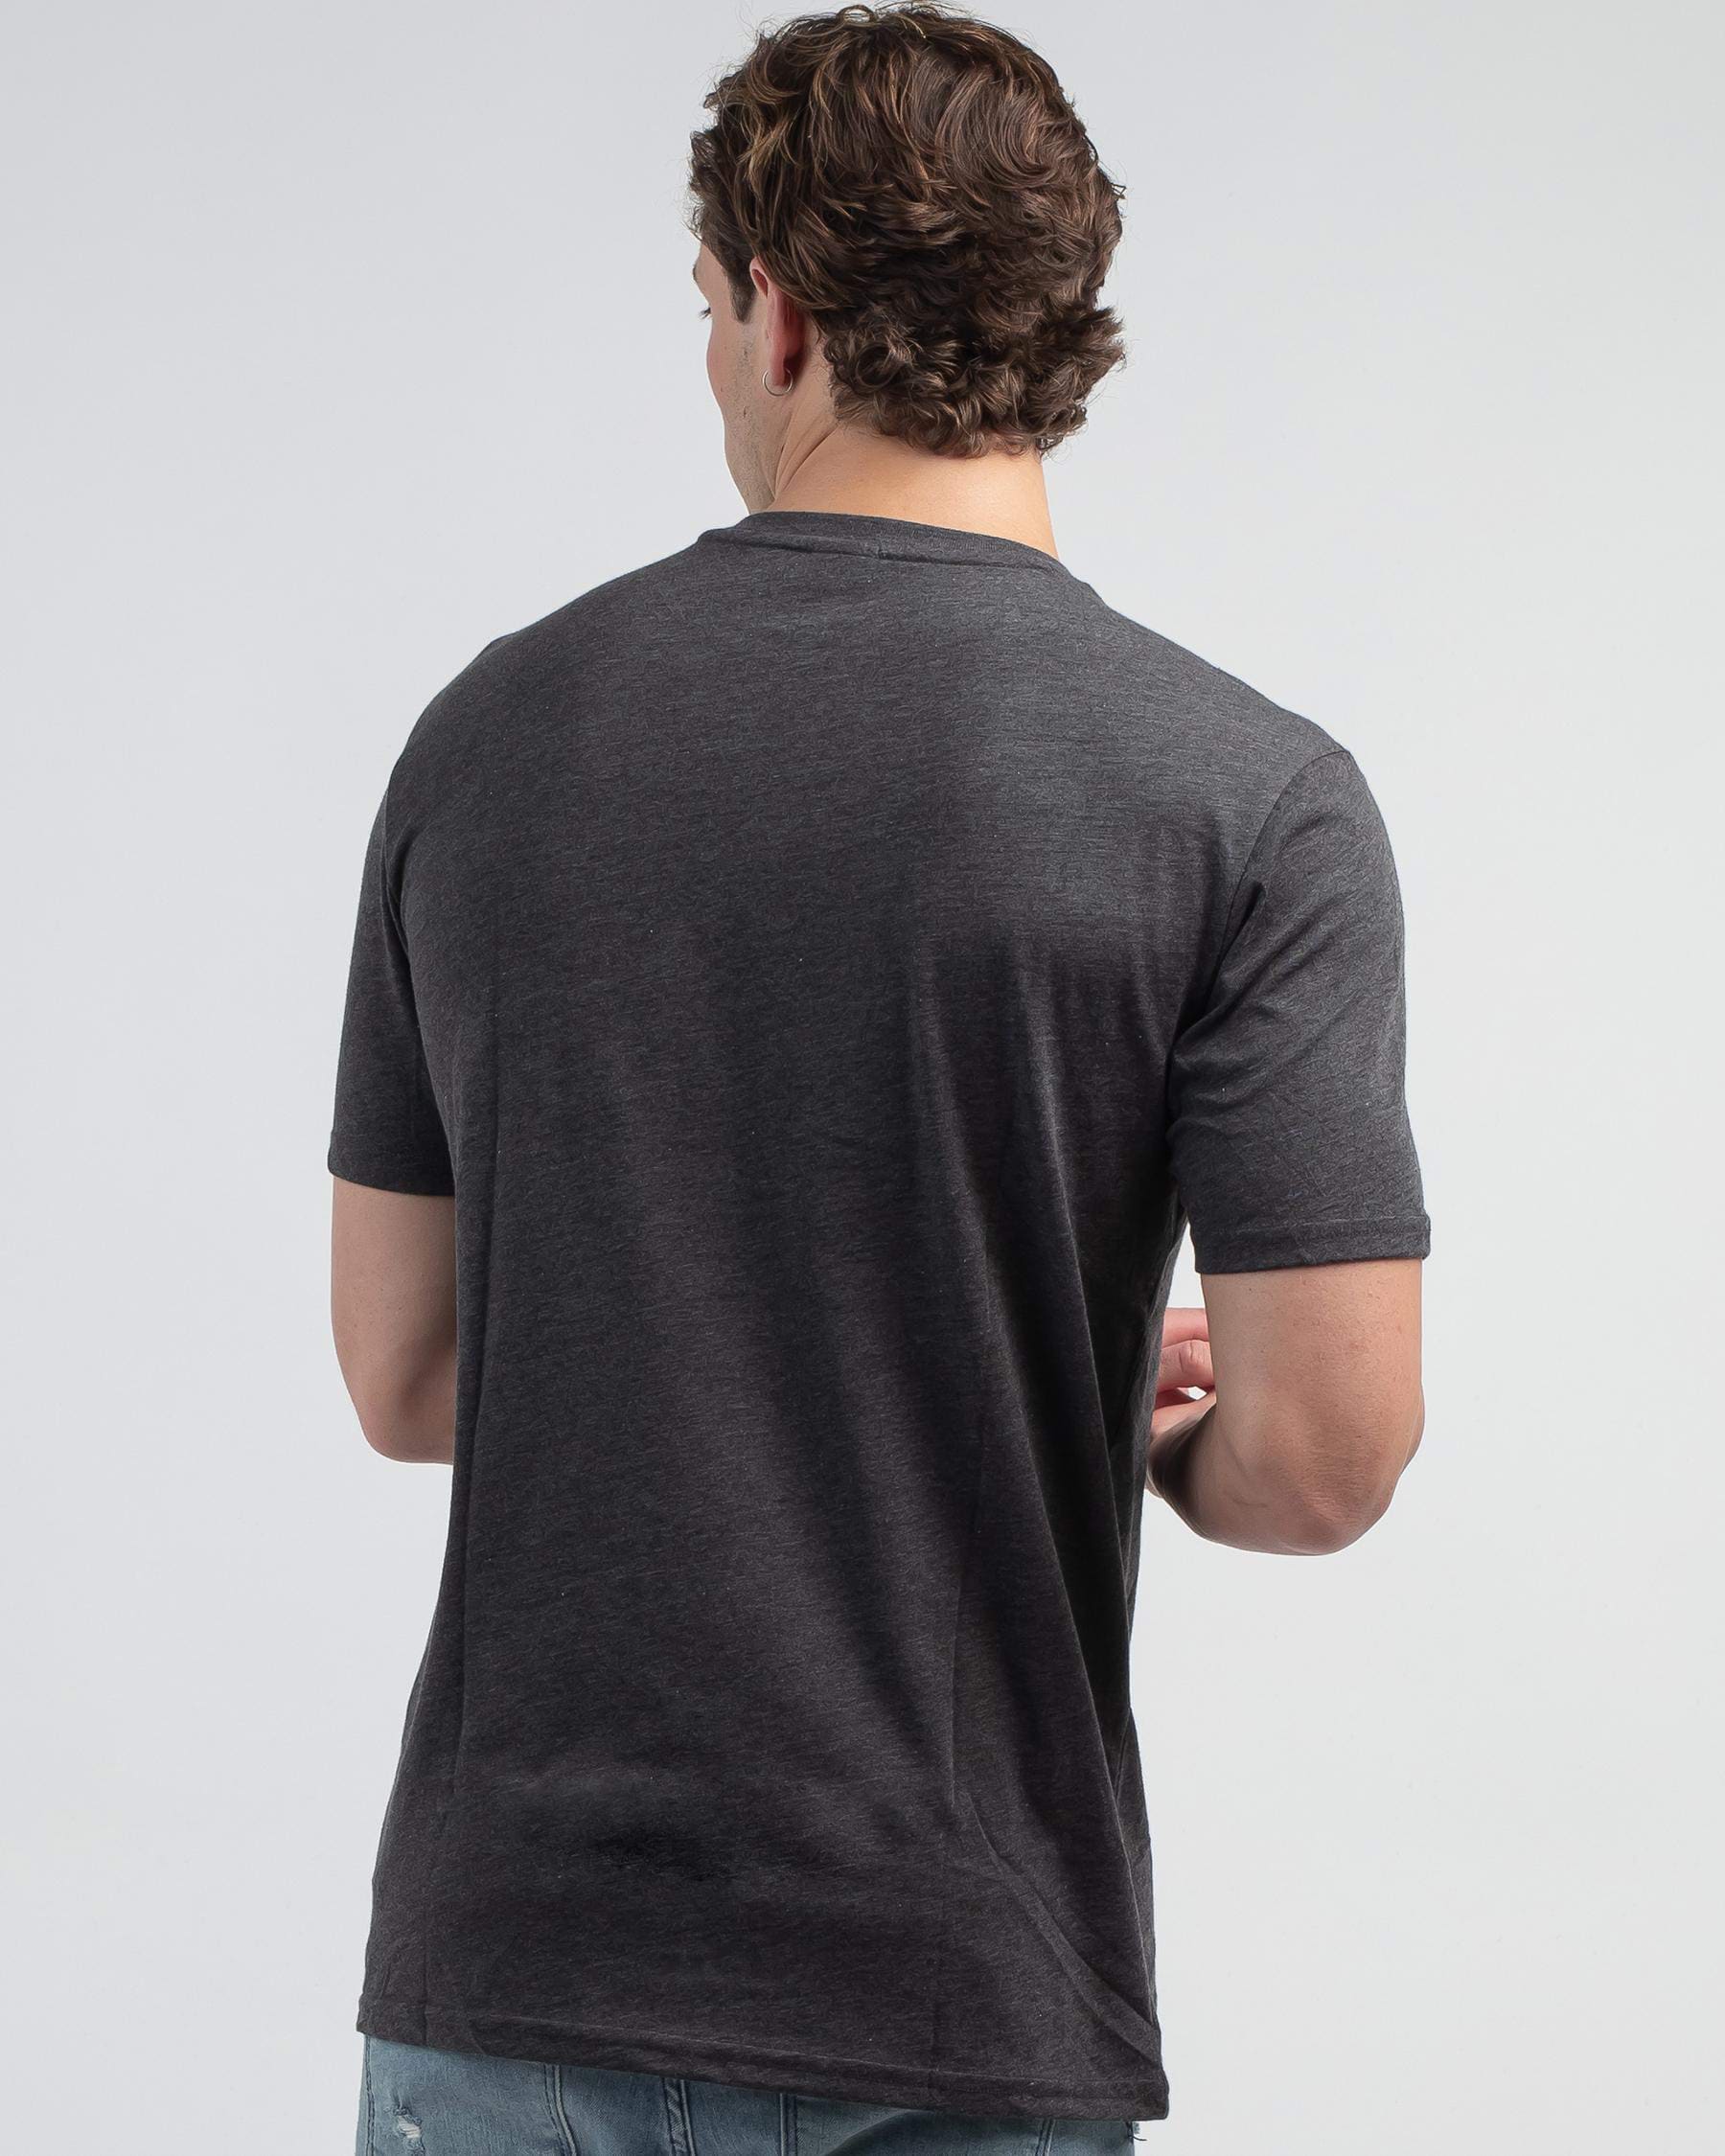 Oakley O Bark 2.0 T-Shirt In Dark Grey Heather - Fast Shipping & Easy ...